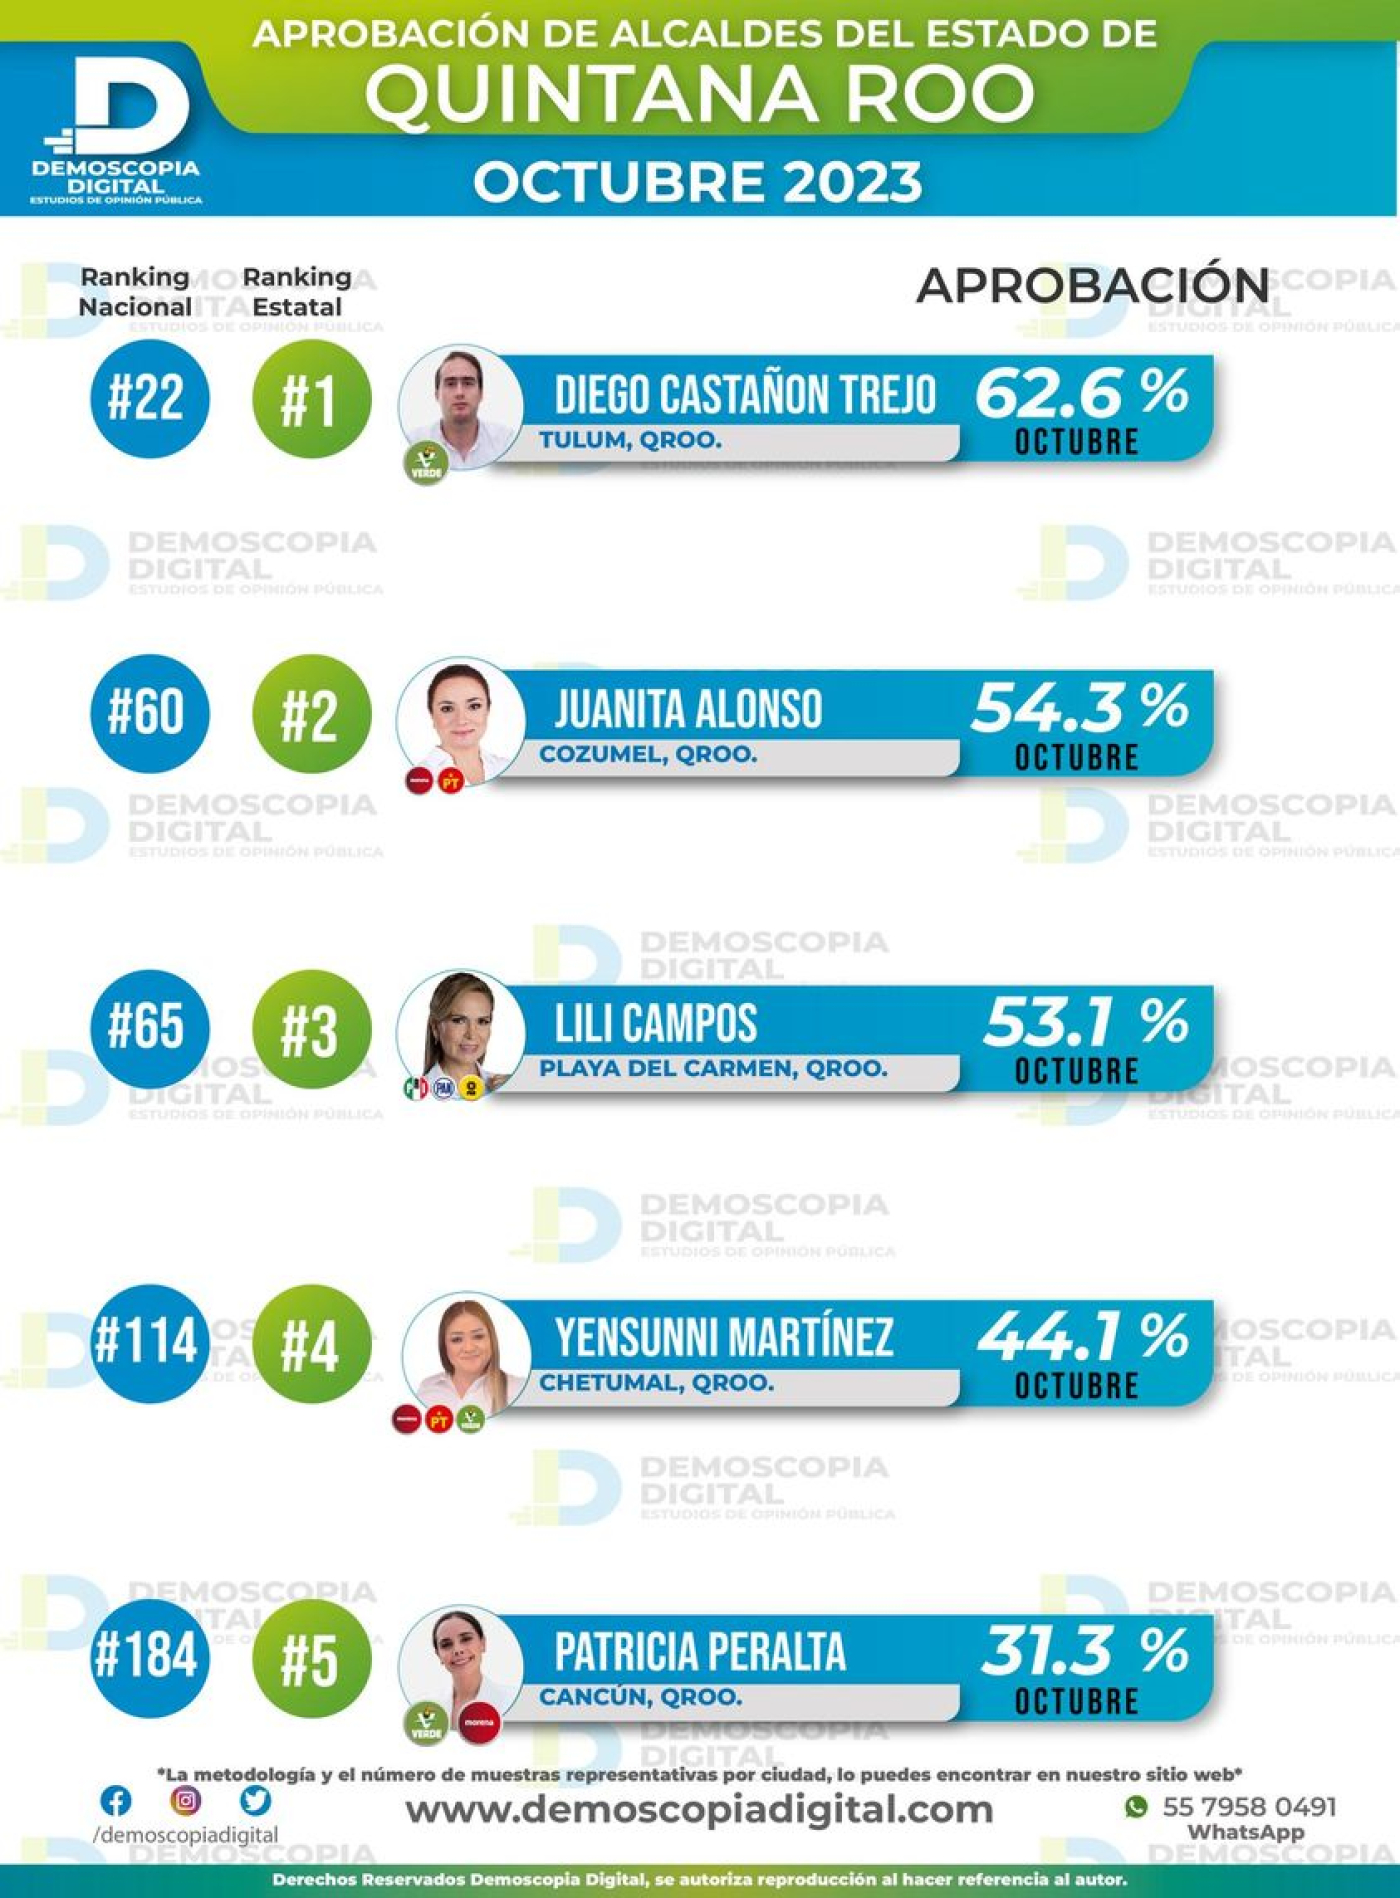 Juanita Alonso en segundo lugar de aprobación ciudadana entre los alcaldes de Quintana Roo